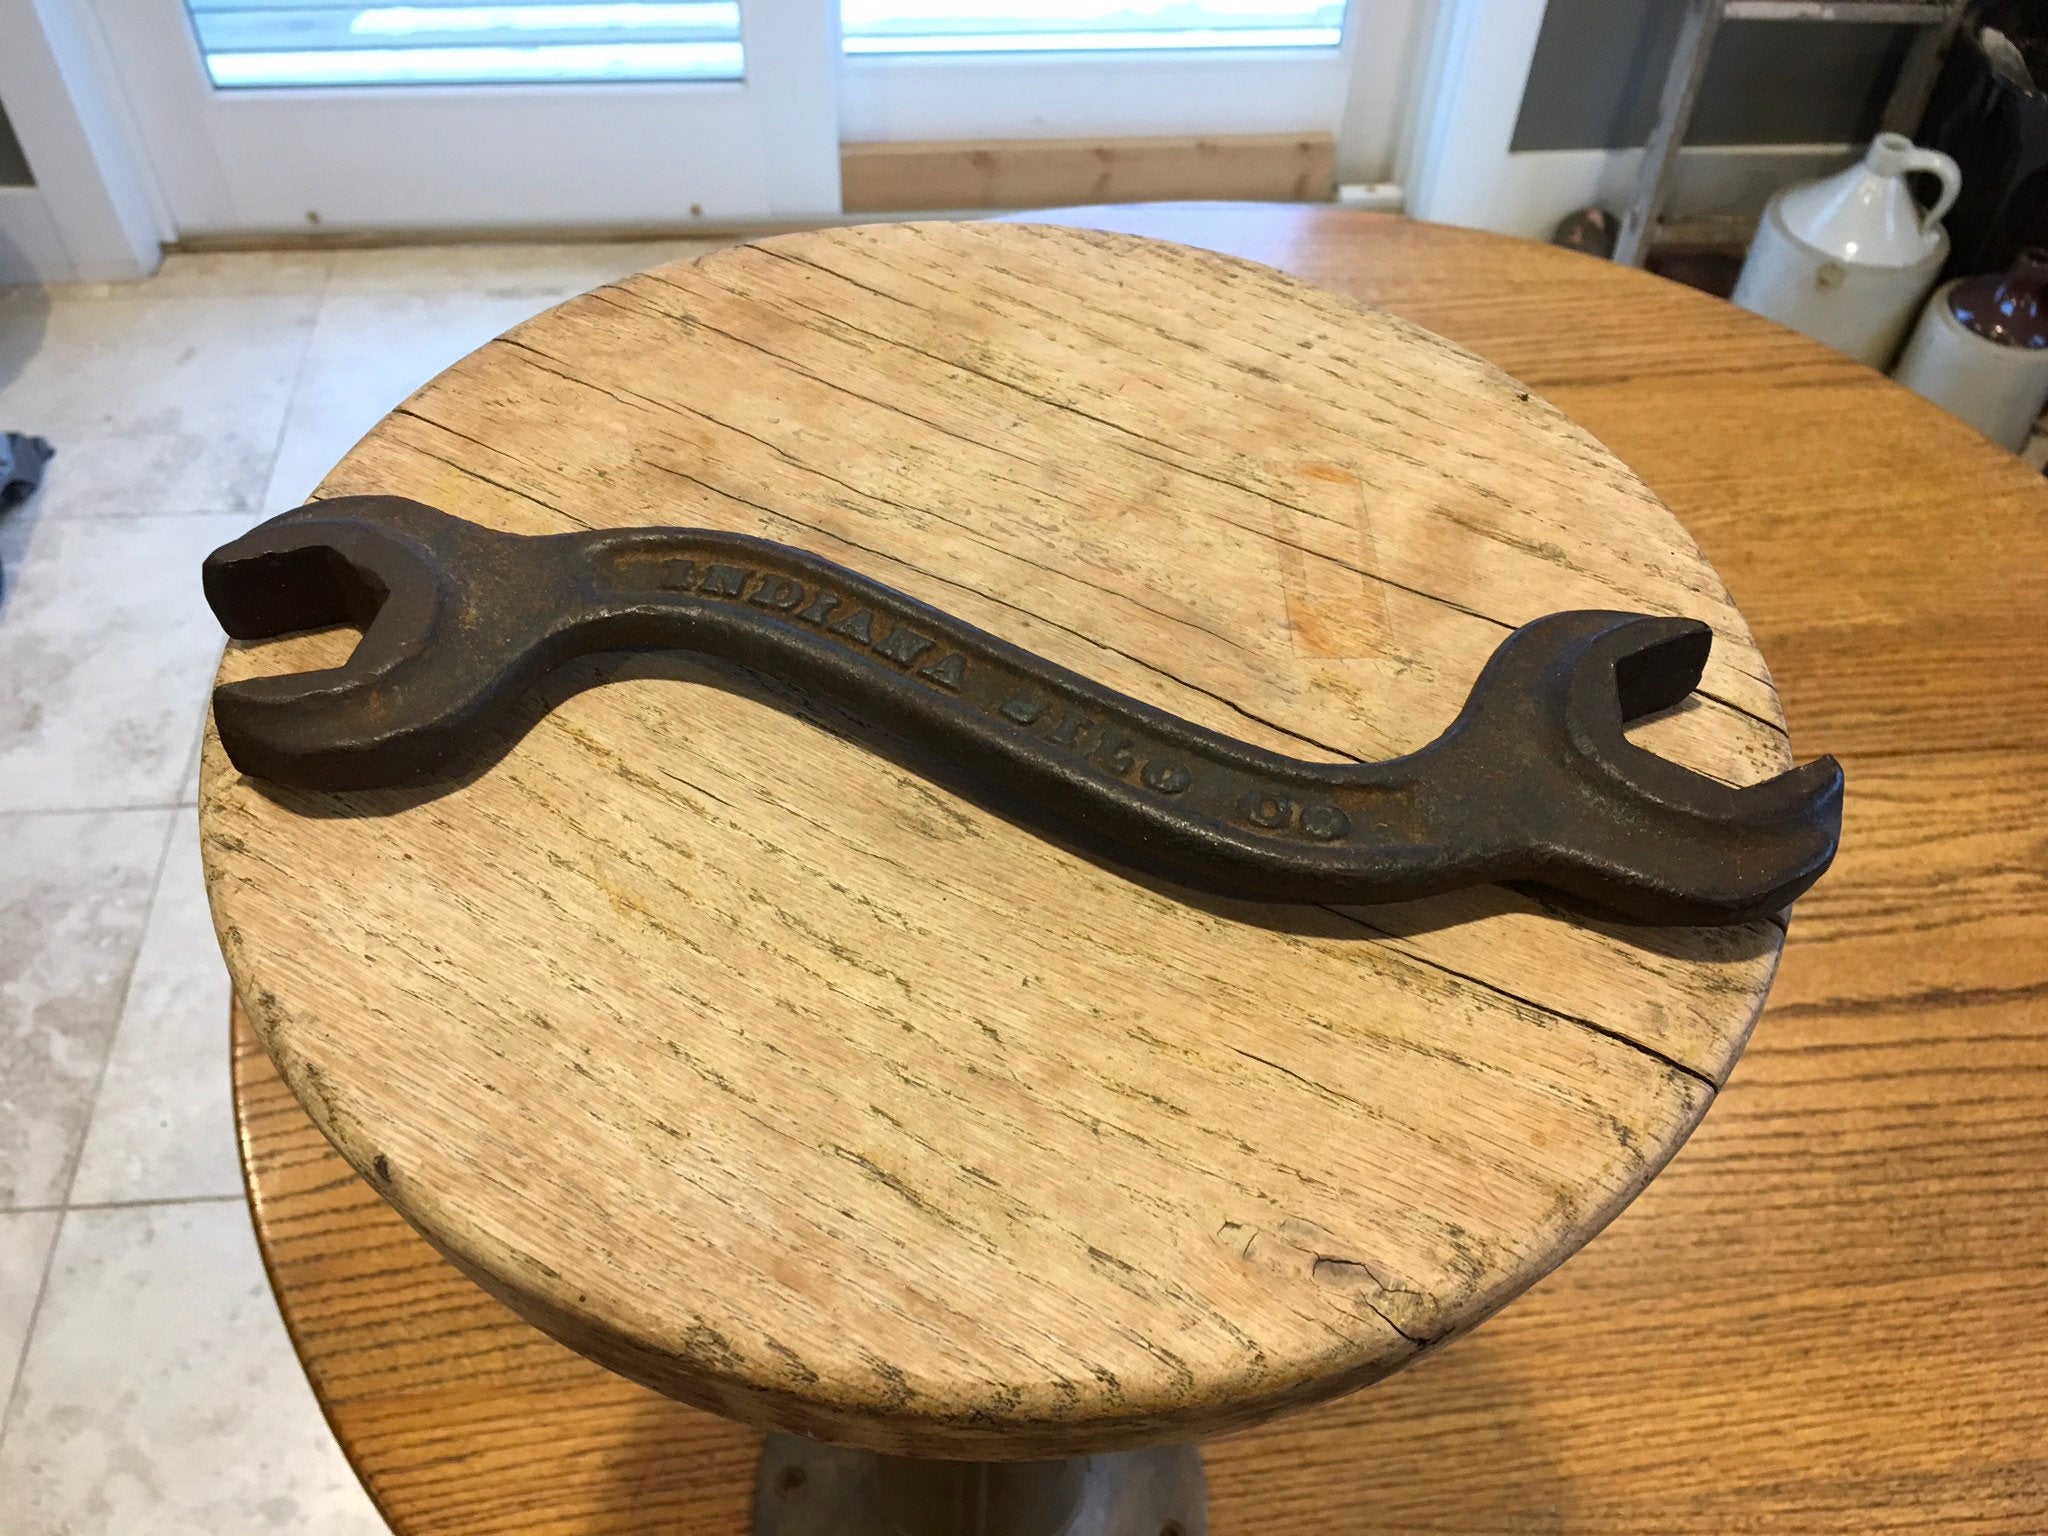 Indiana Silo Company Wrench